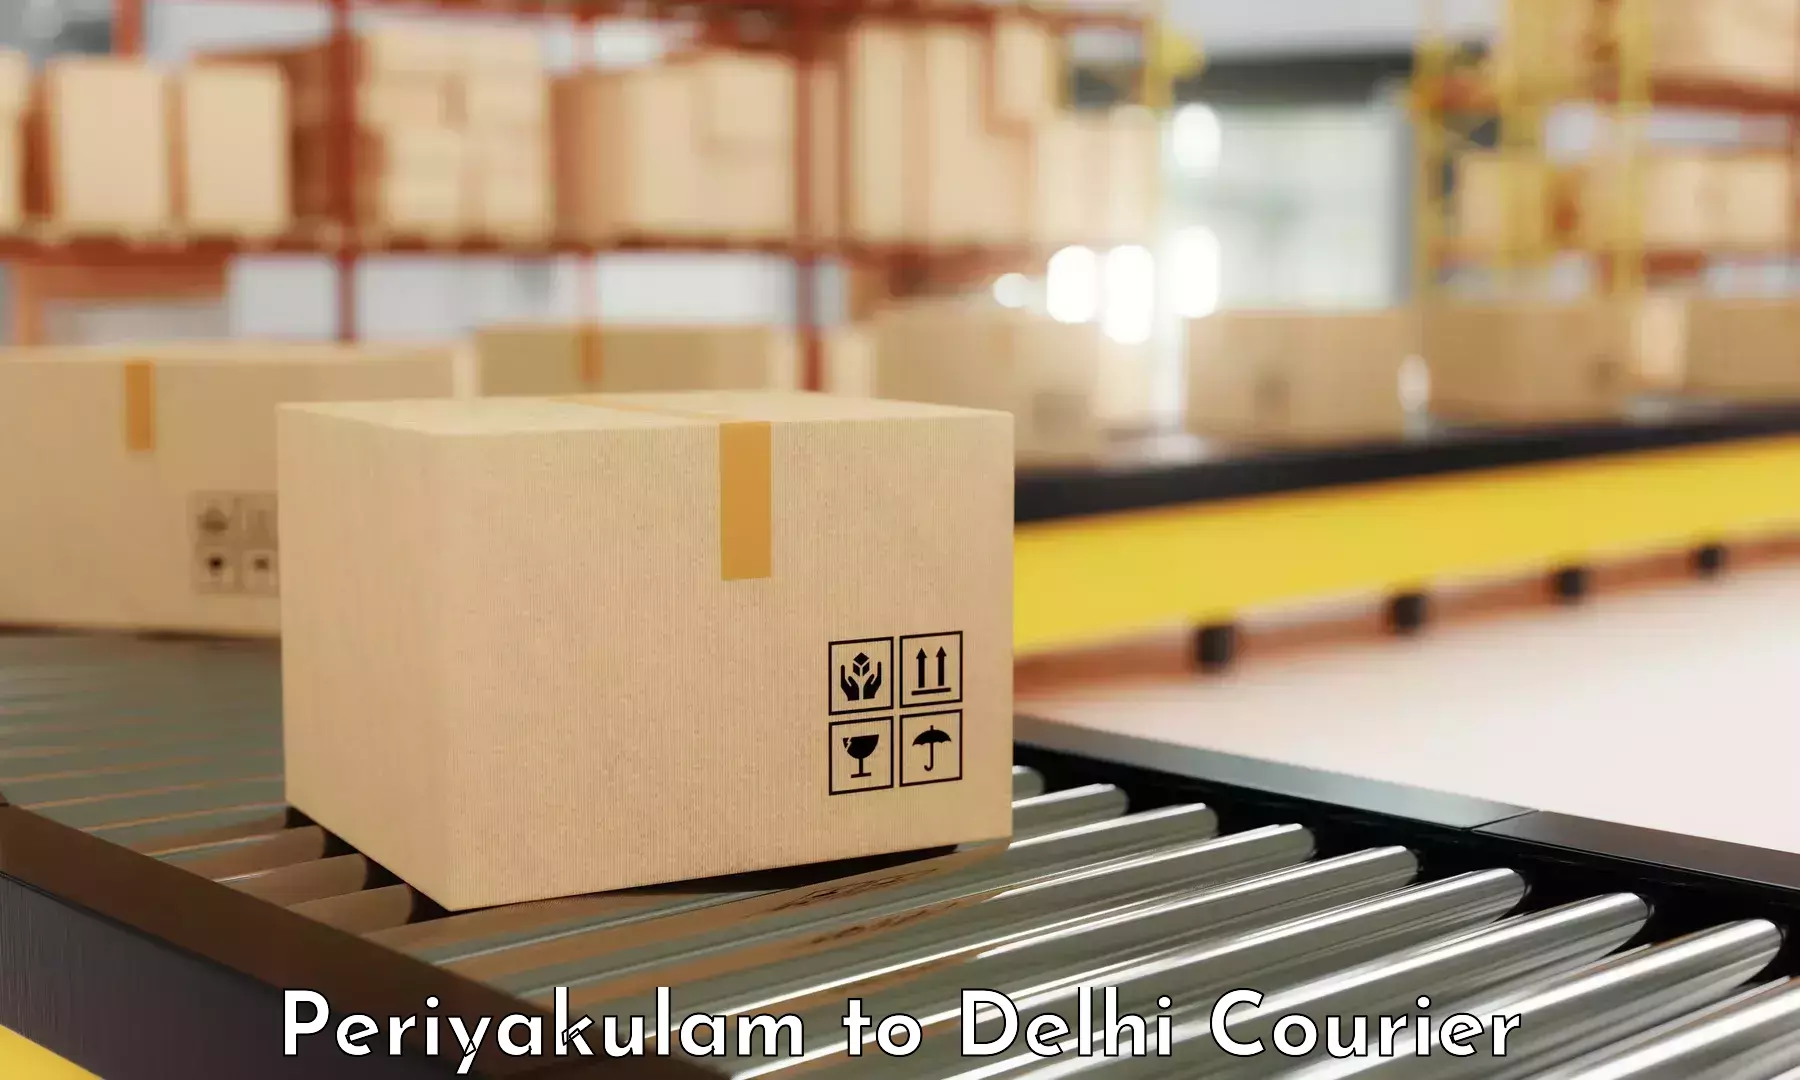 Corporate courier solutions Periyakulam to Burari